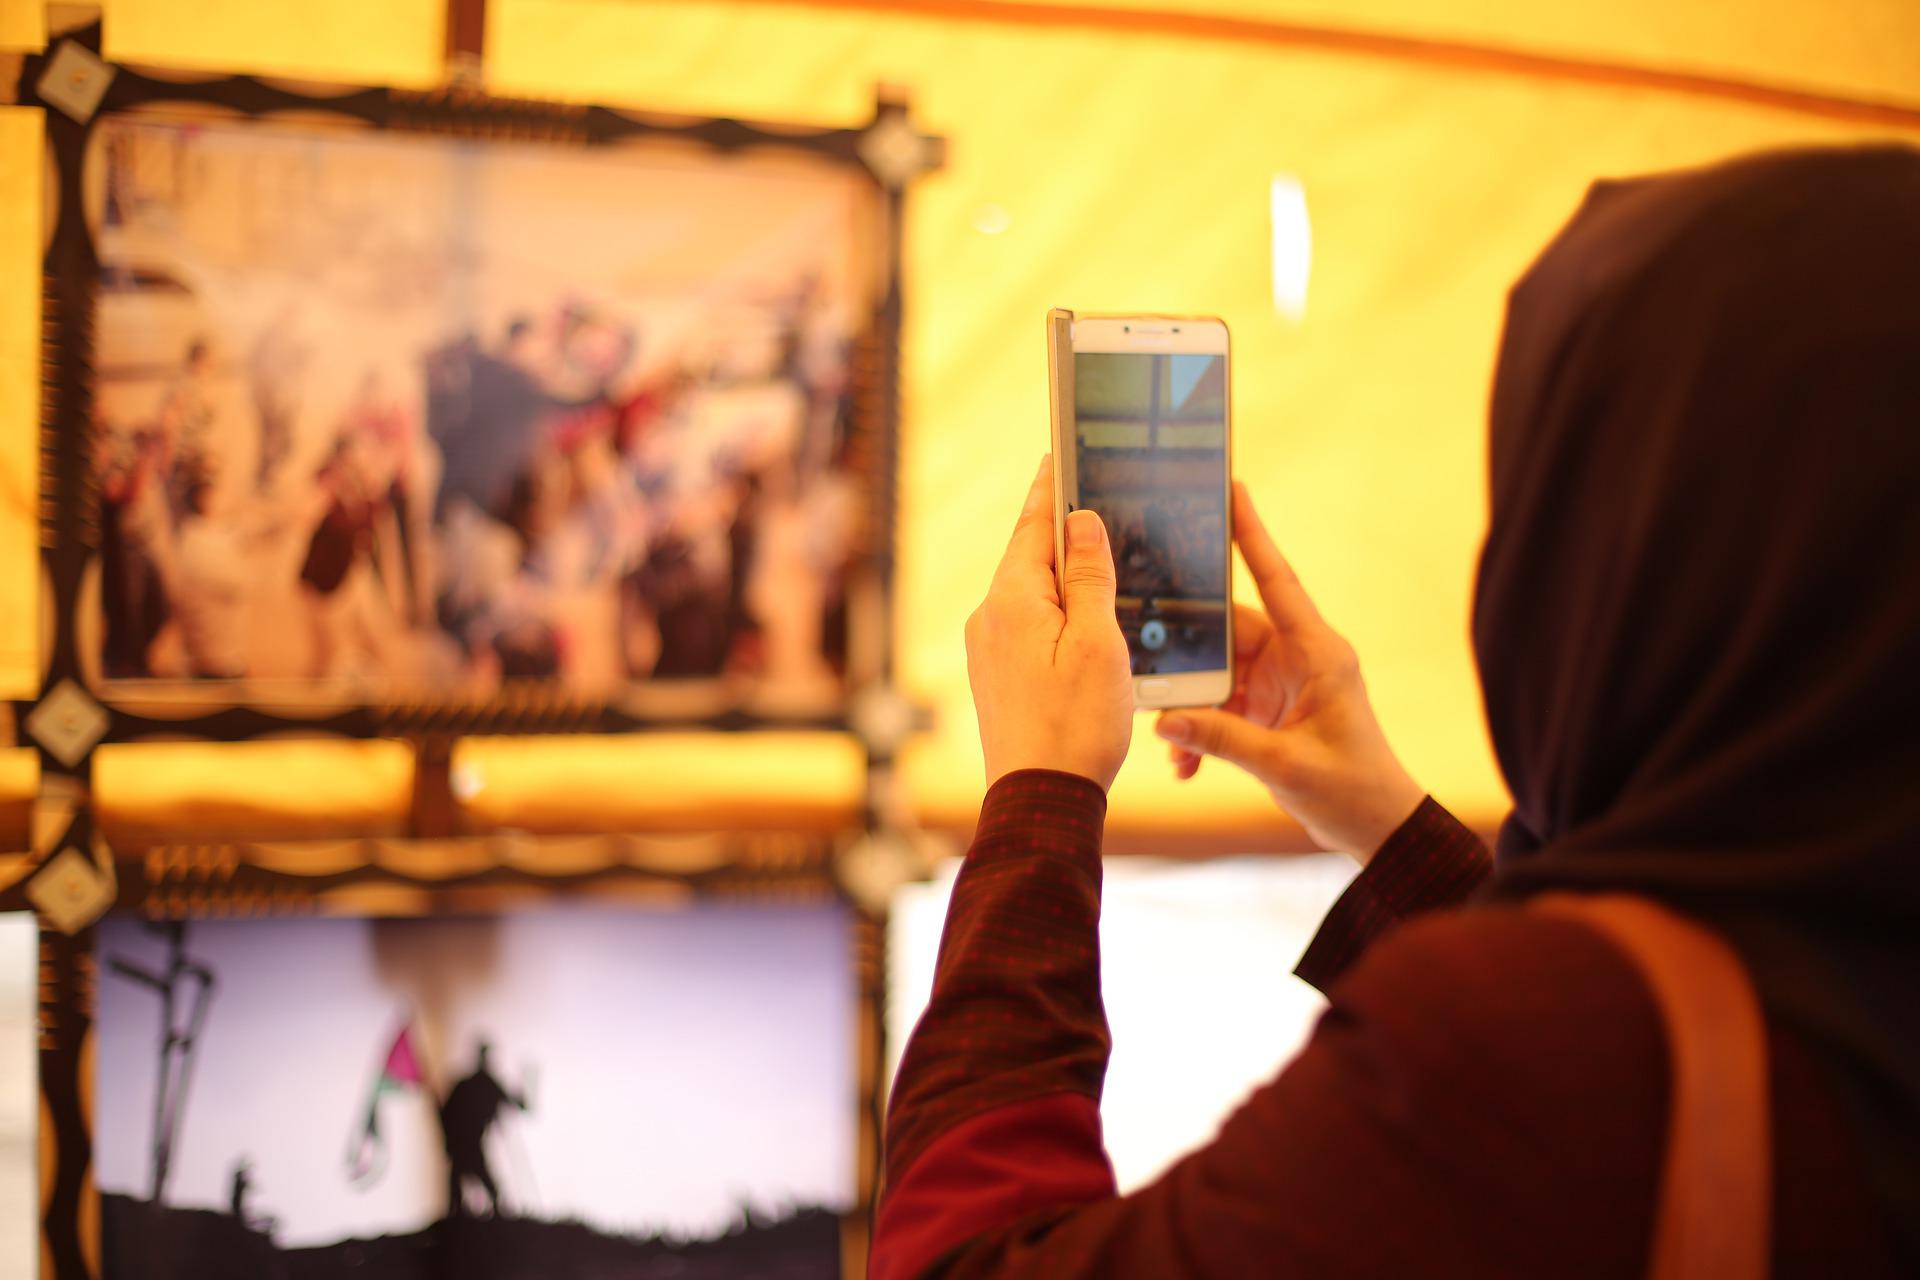 Une femme portant un hijab prend une photo avec un téléphone portable.